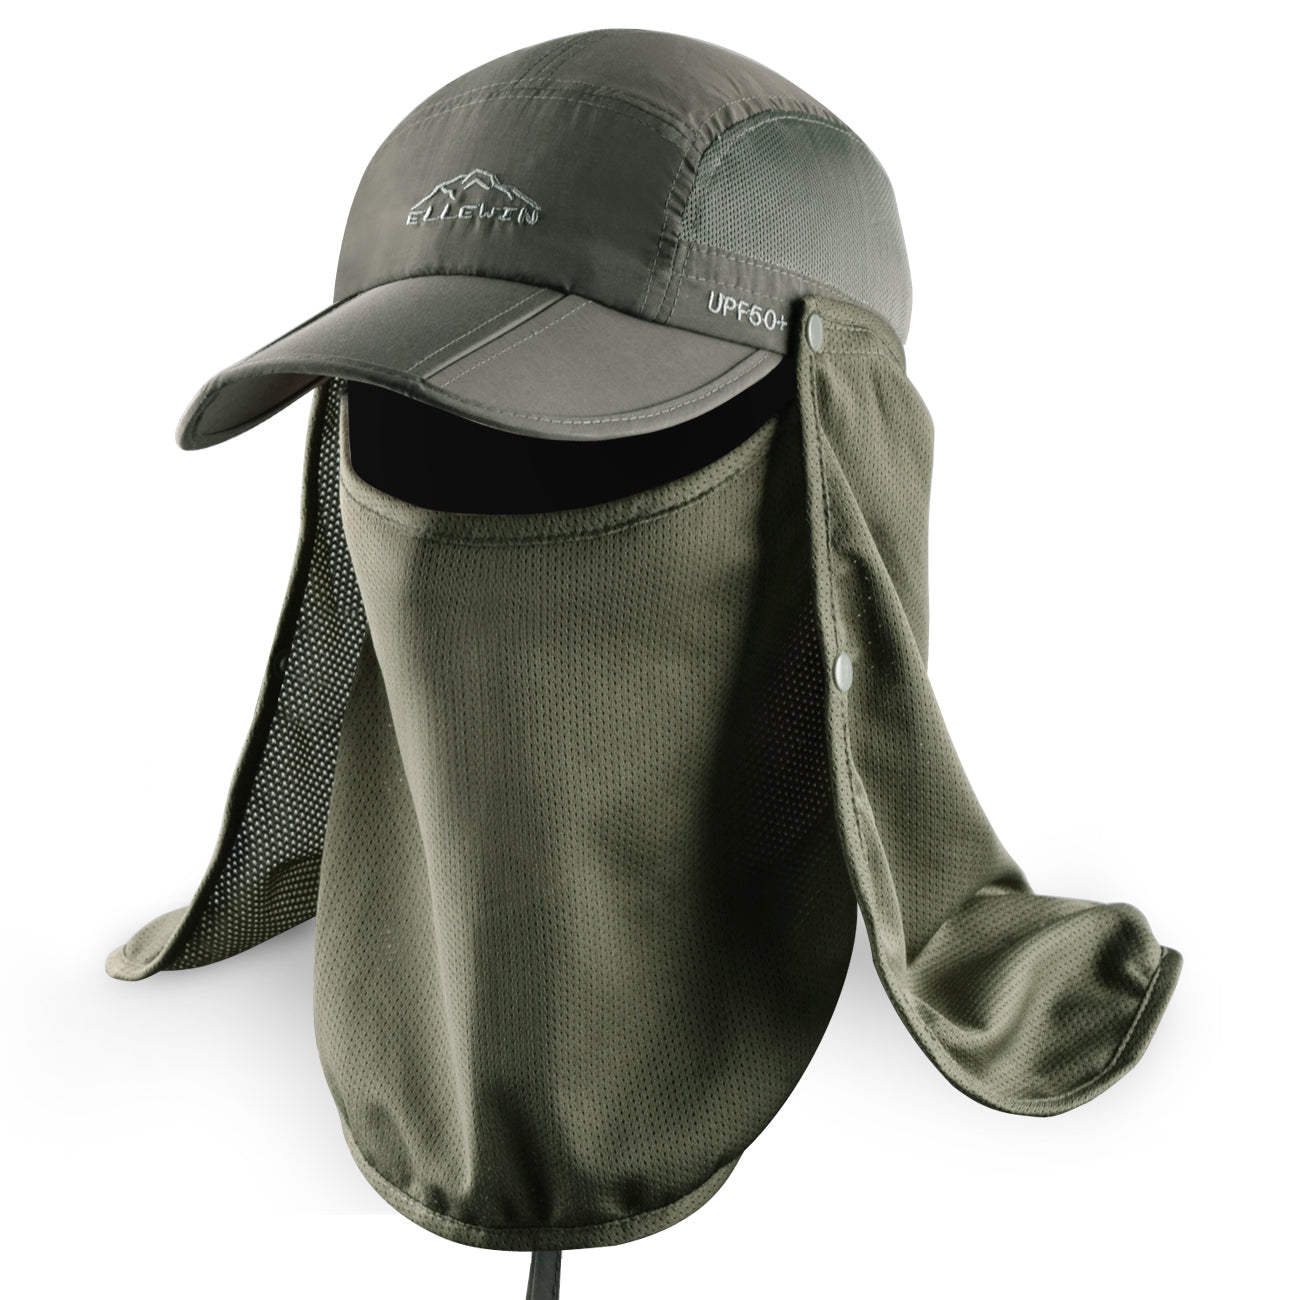 Fishing Hat with Detachable Neck Flap Cover Sun Protection Women Men Sun Cap